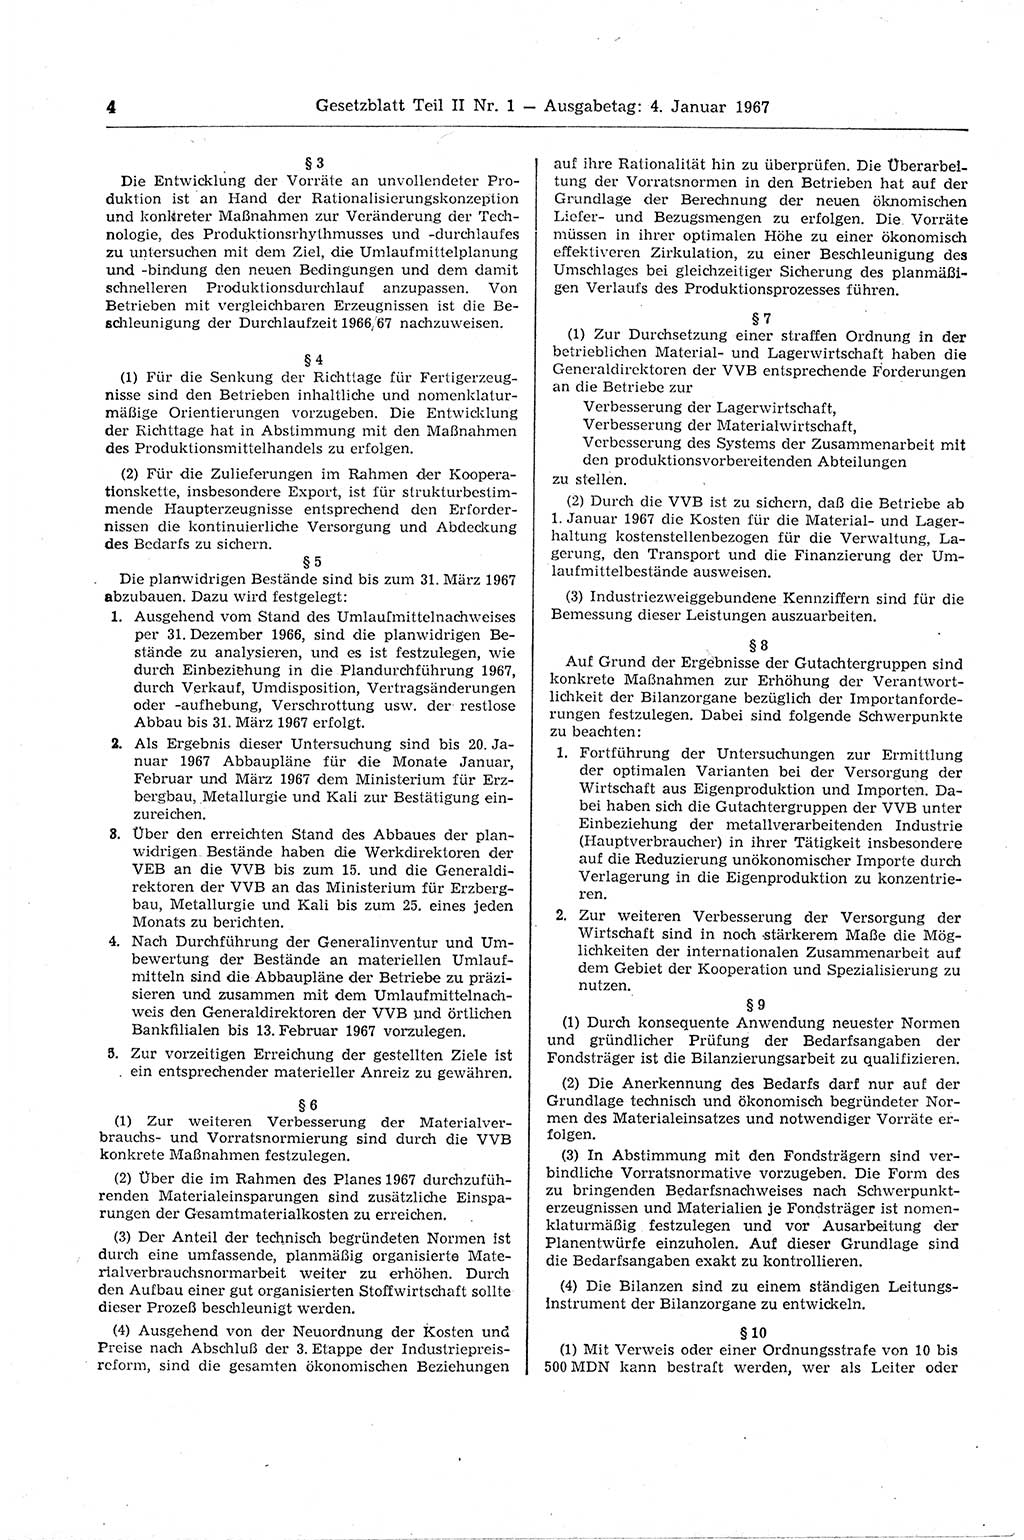 Gesetzblatt (GBl.) der Deutschen Demokratischen Republik (DDR) Teil ⅠⅠ 1967, Seite 4 (GBl. DDR ⅠⅠ 1967, S. 4)